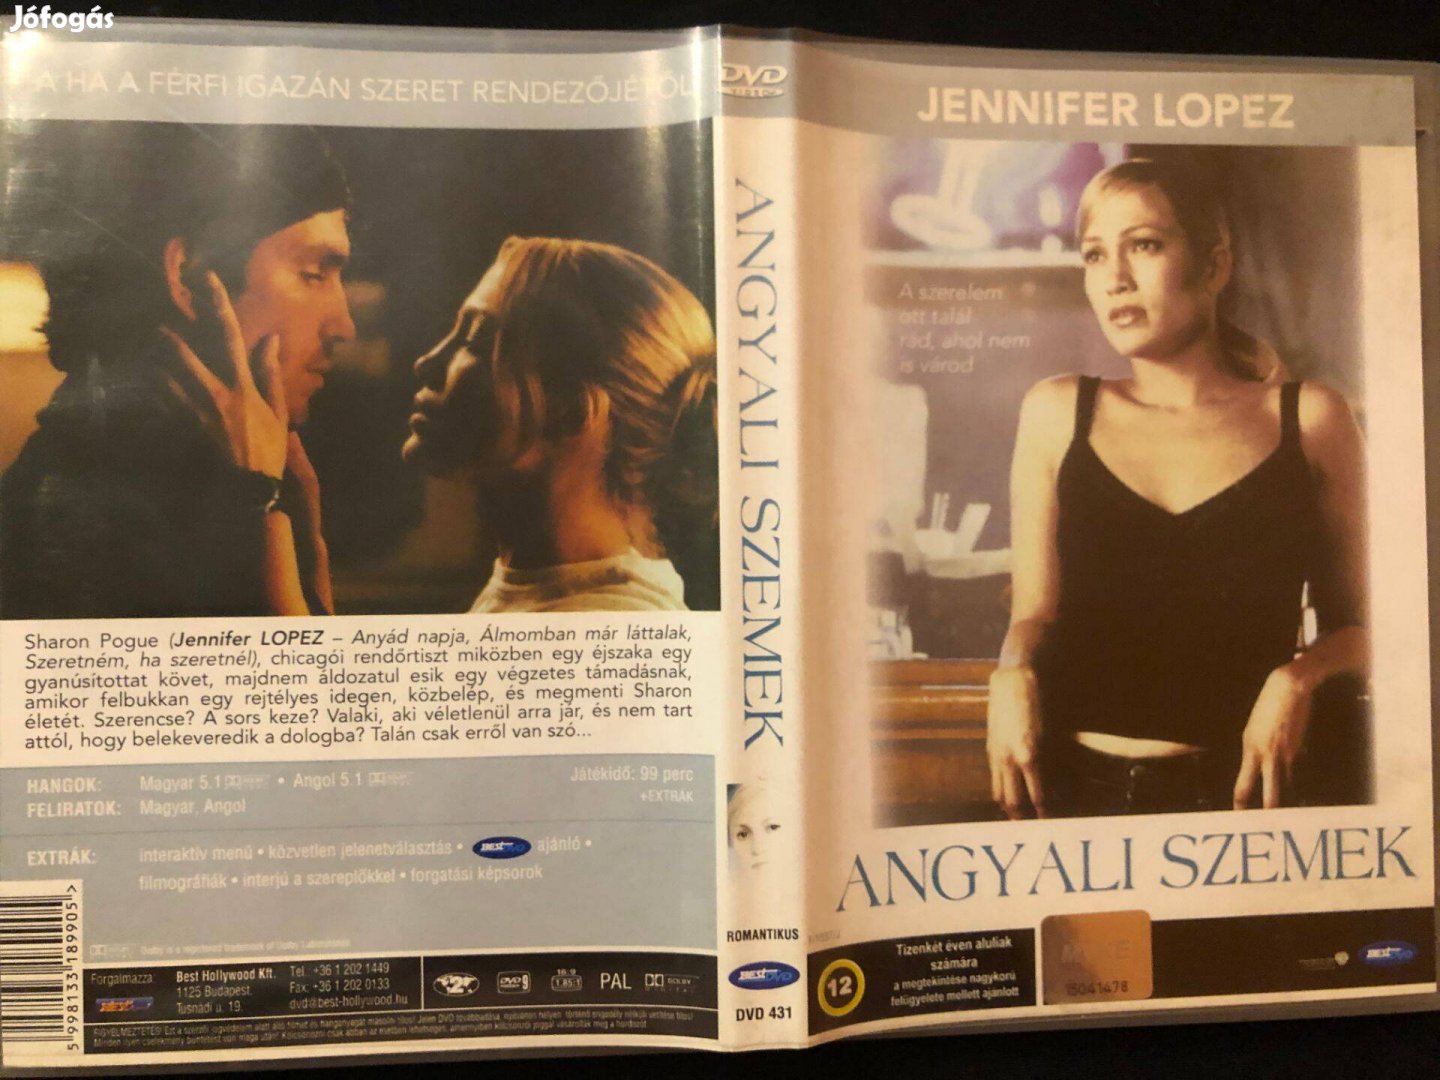 Angyali szemek (Jennifer Lopez, karcmentes) DVD